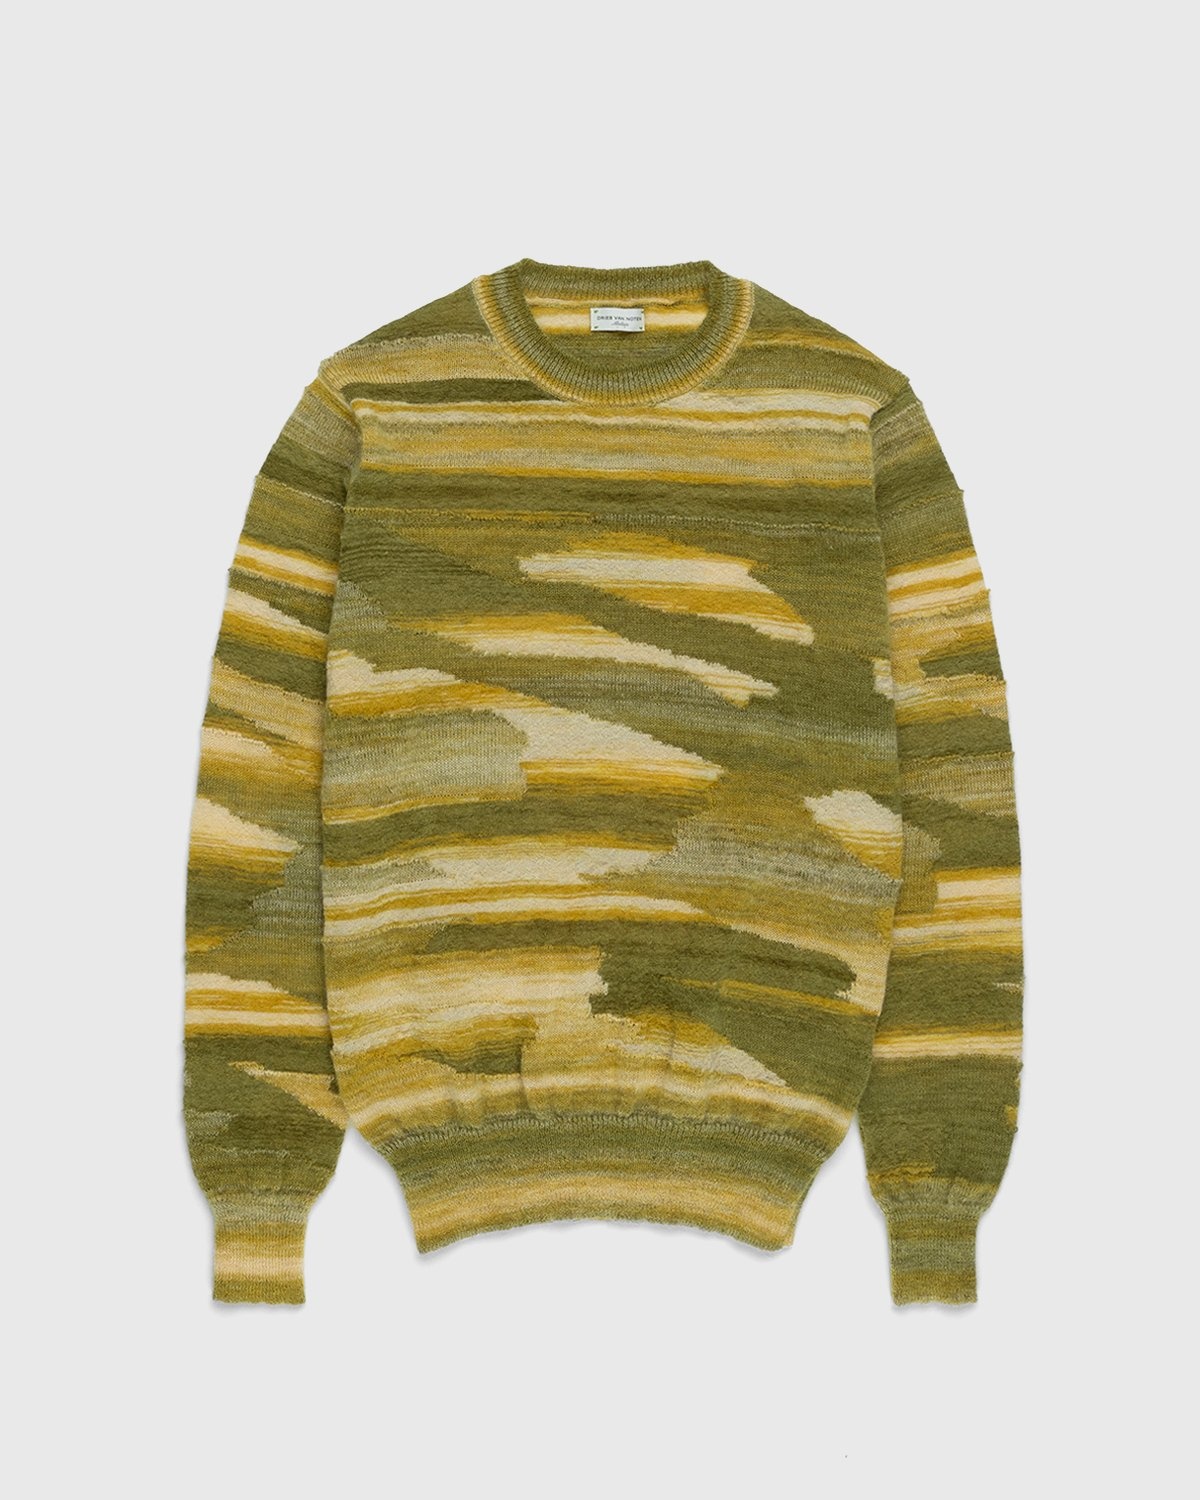 Dries van Noten – Jamino Sweater Yellow - Knitwear - Yellow - Image 1